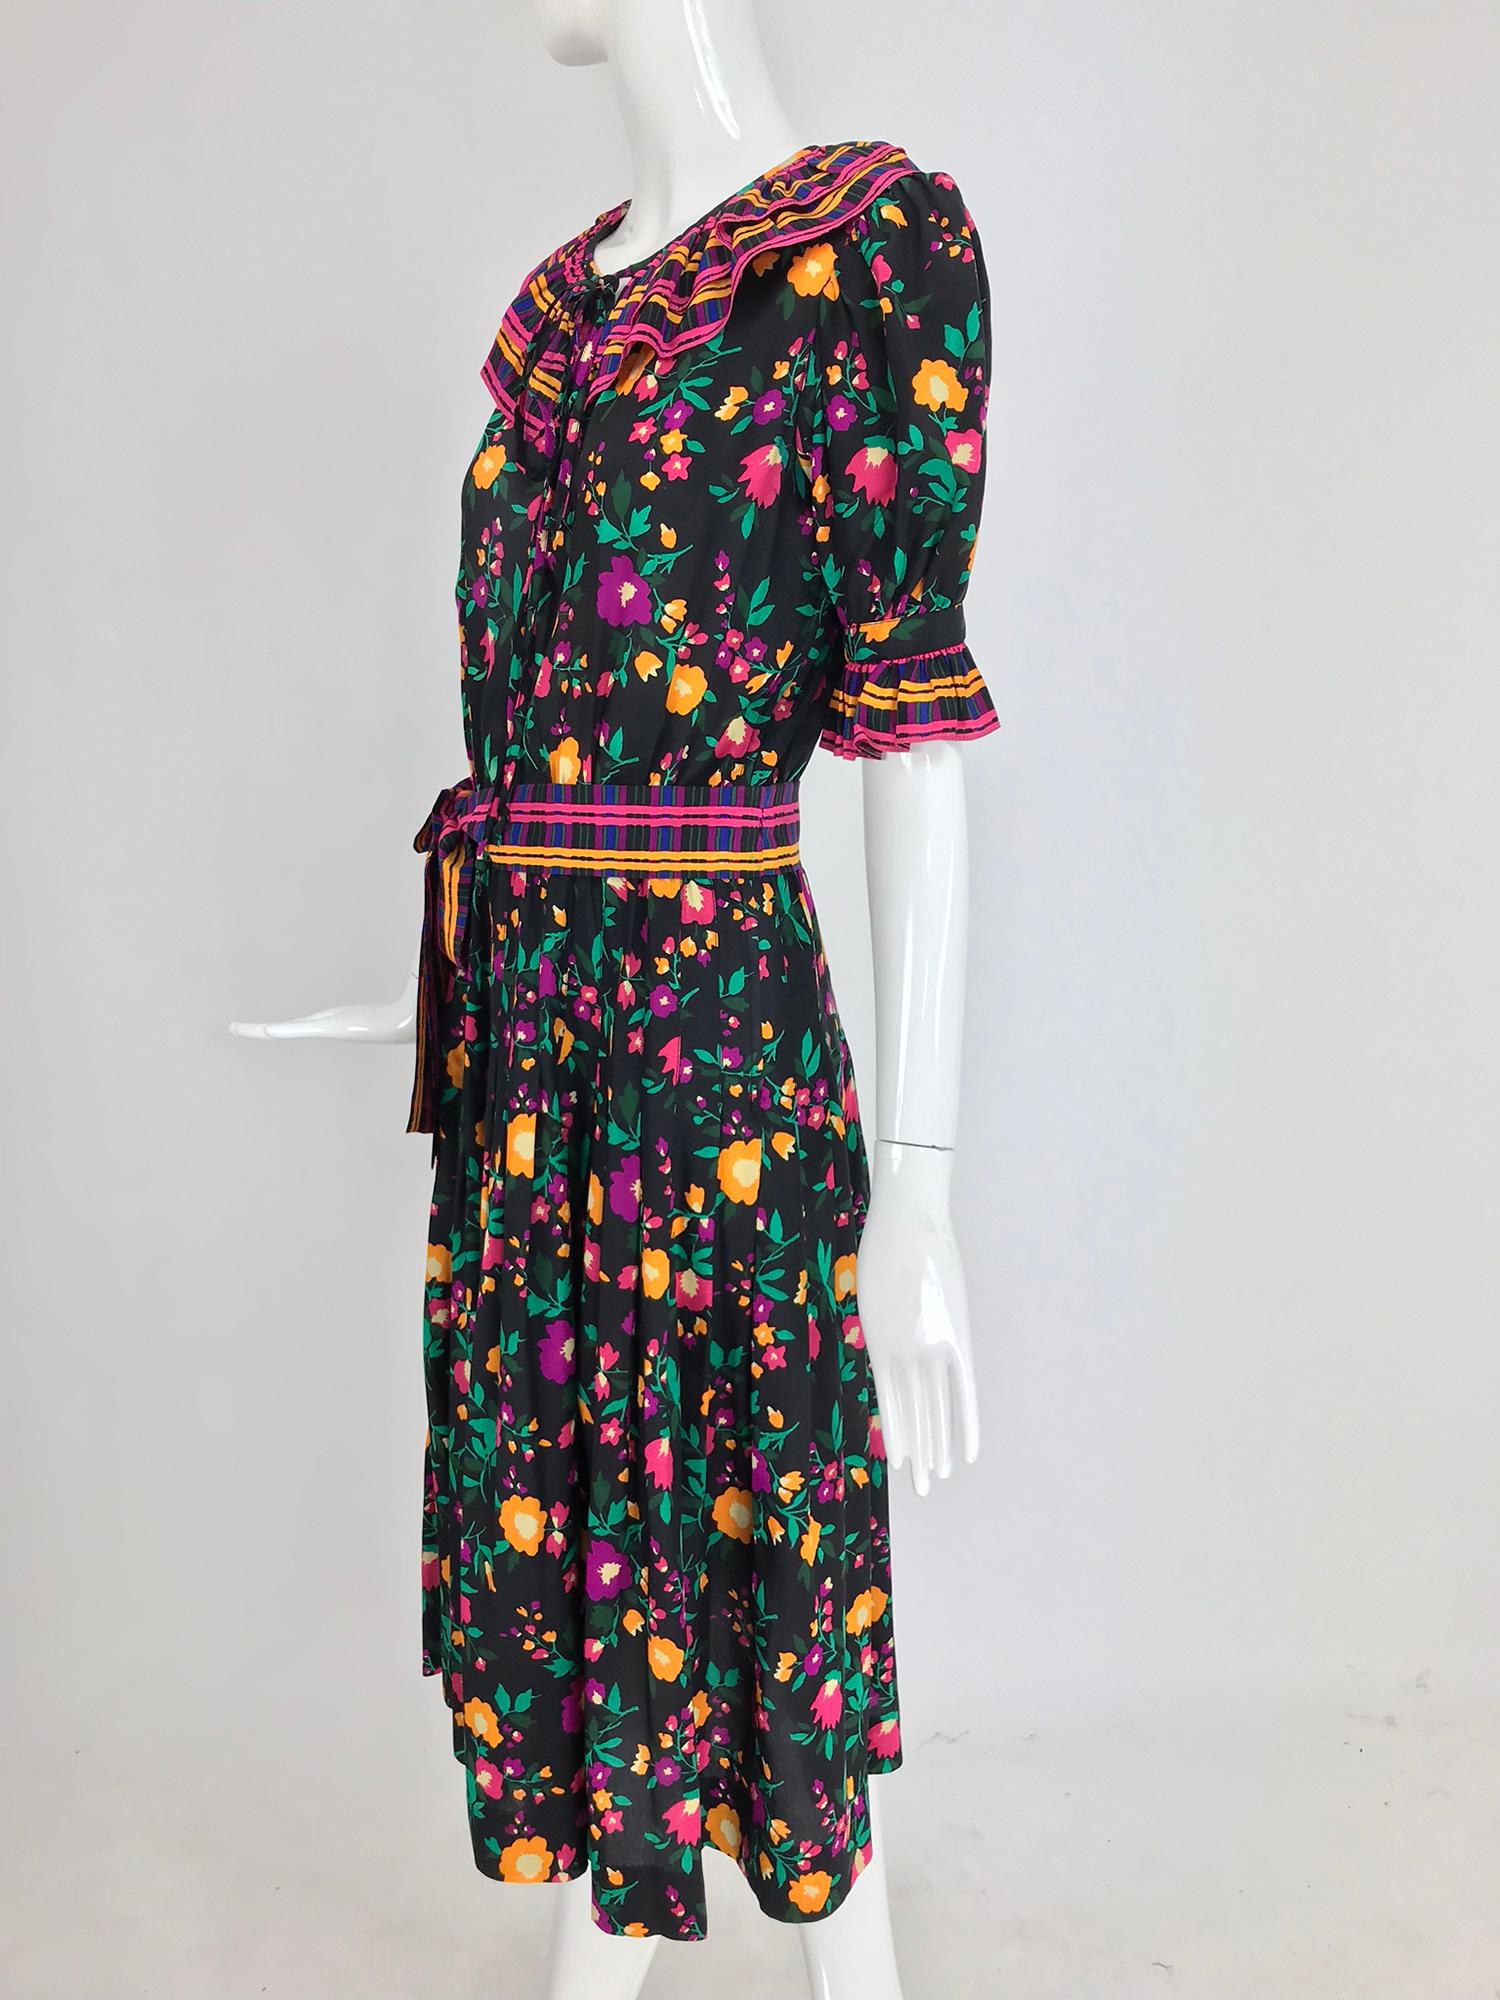 Black Yves Saint Laurent Rive Gauche floral silk mix print dress 1970s